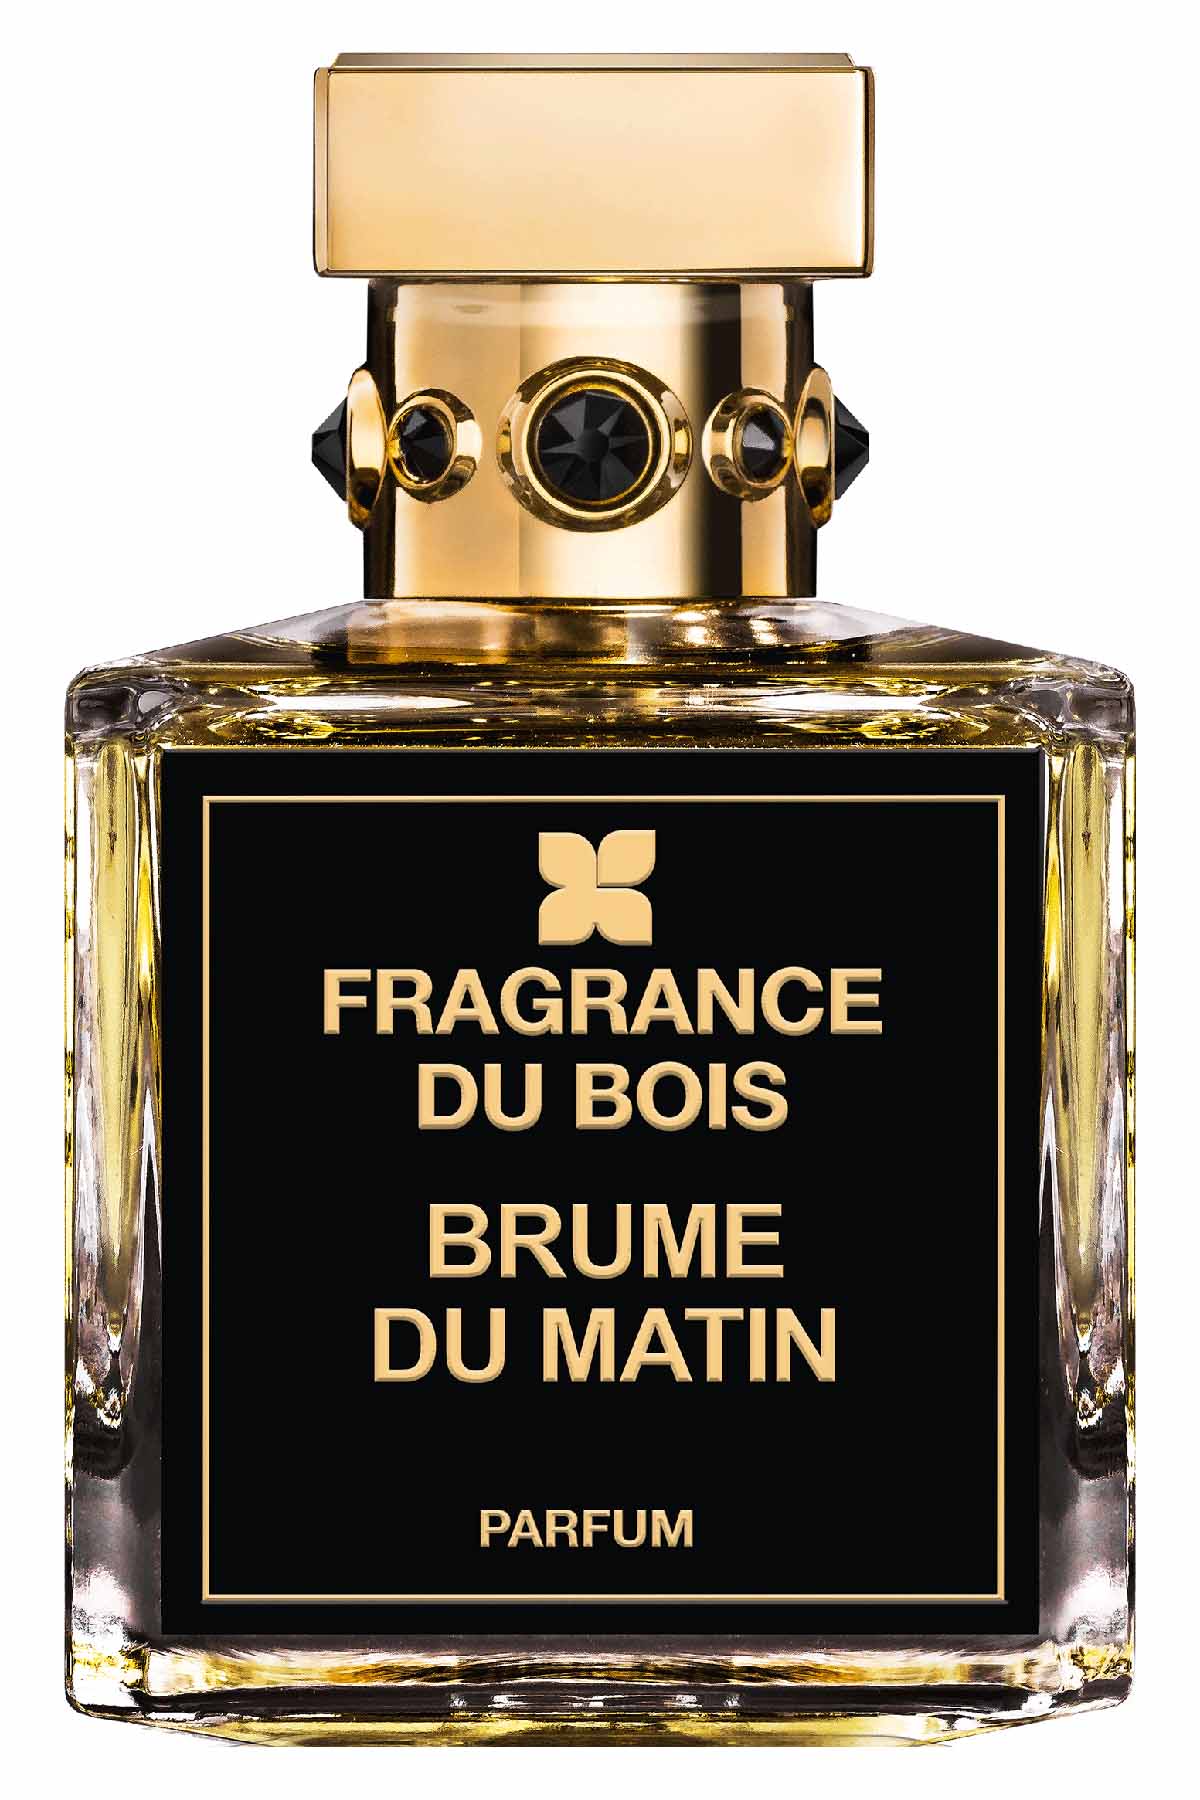 Fragrance Du Bois Brume Du Matin Parfum